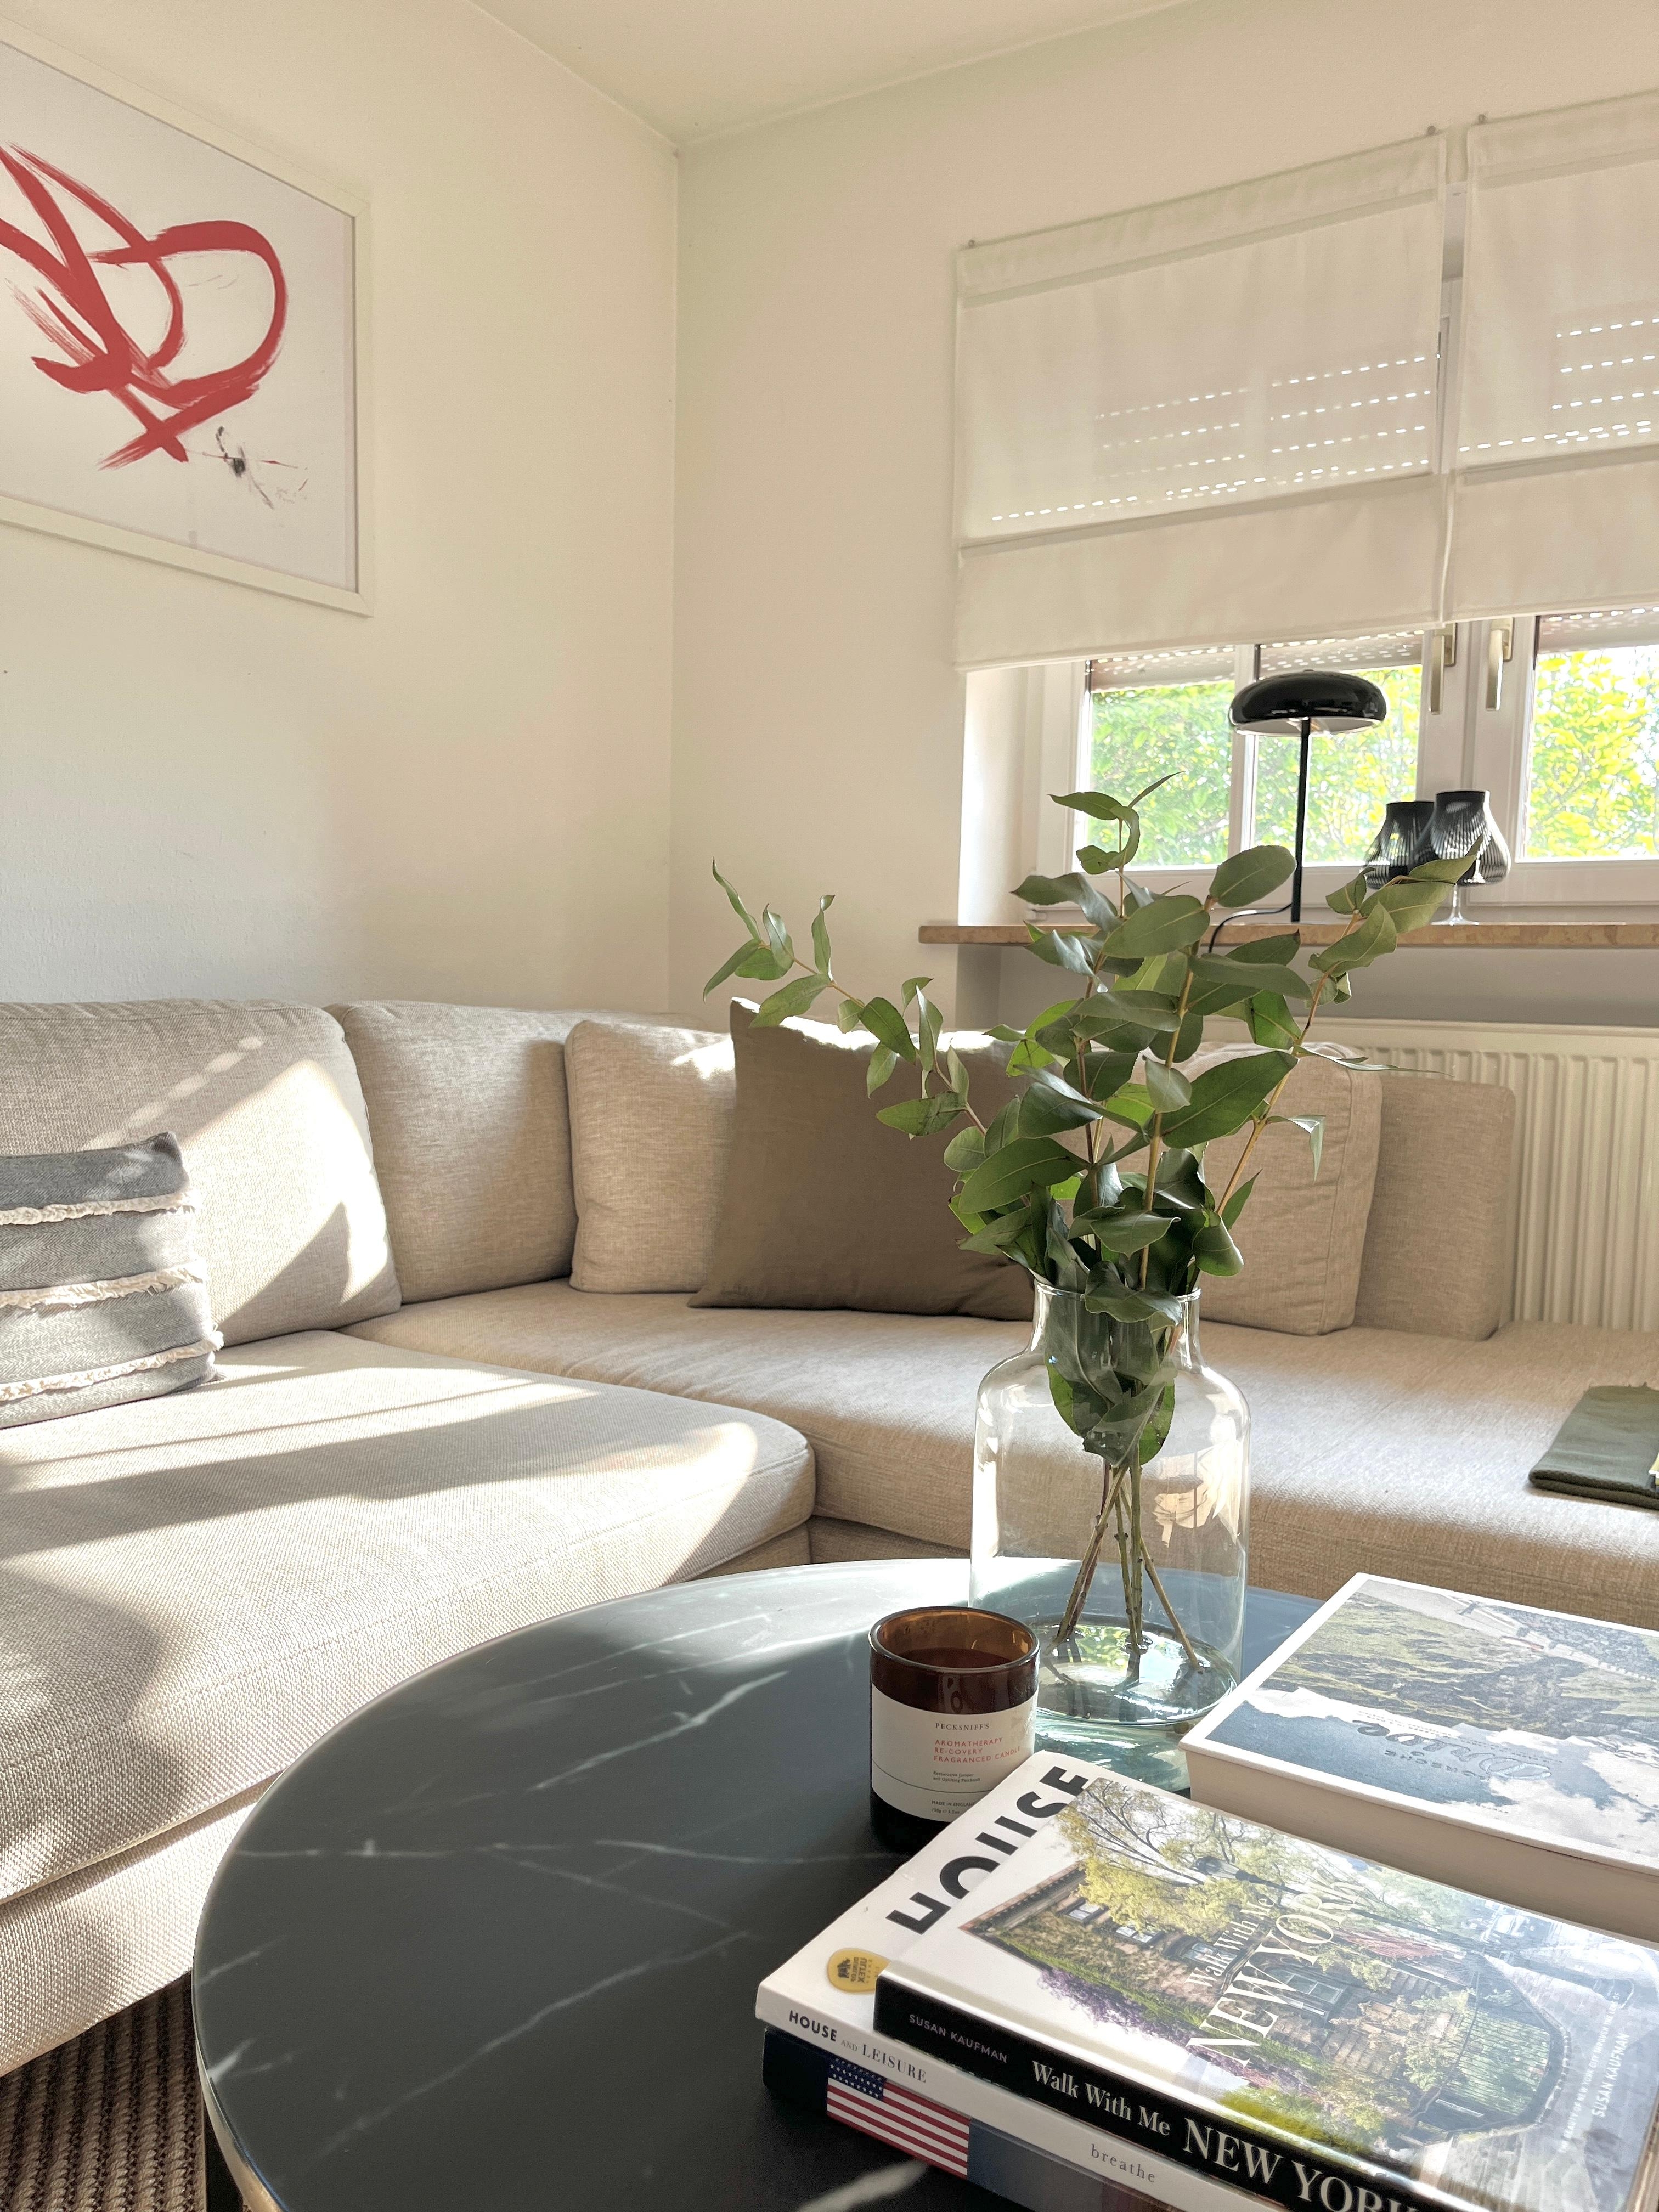 🛋️ 
#couch#wohnzimmer#abendsonne#freshflowers#pigcasso#coffeetable#coffeetablebooks#feierabend#urlaubserinnerung